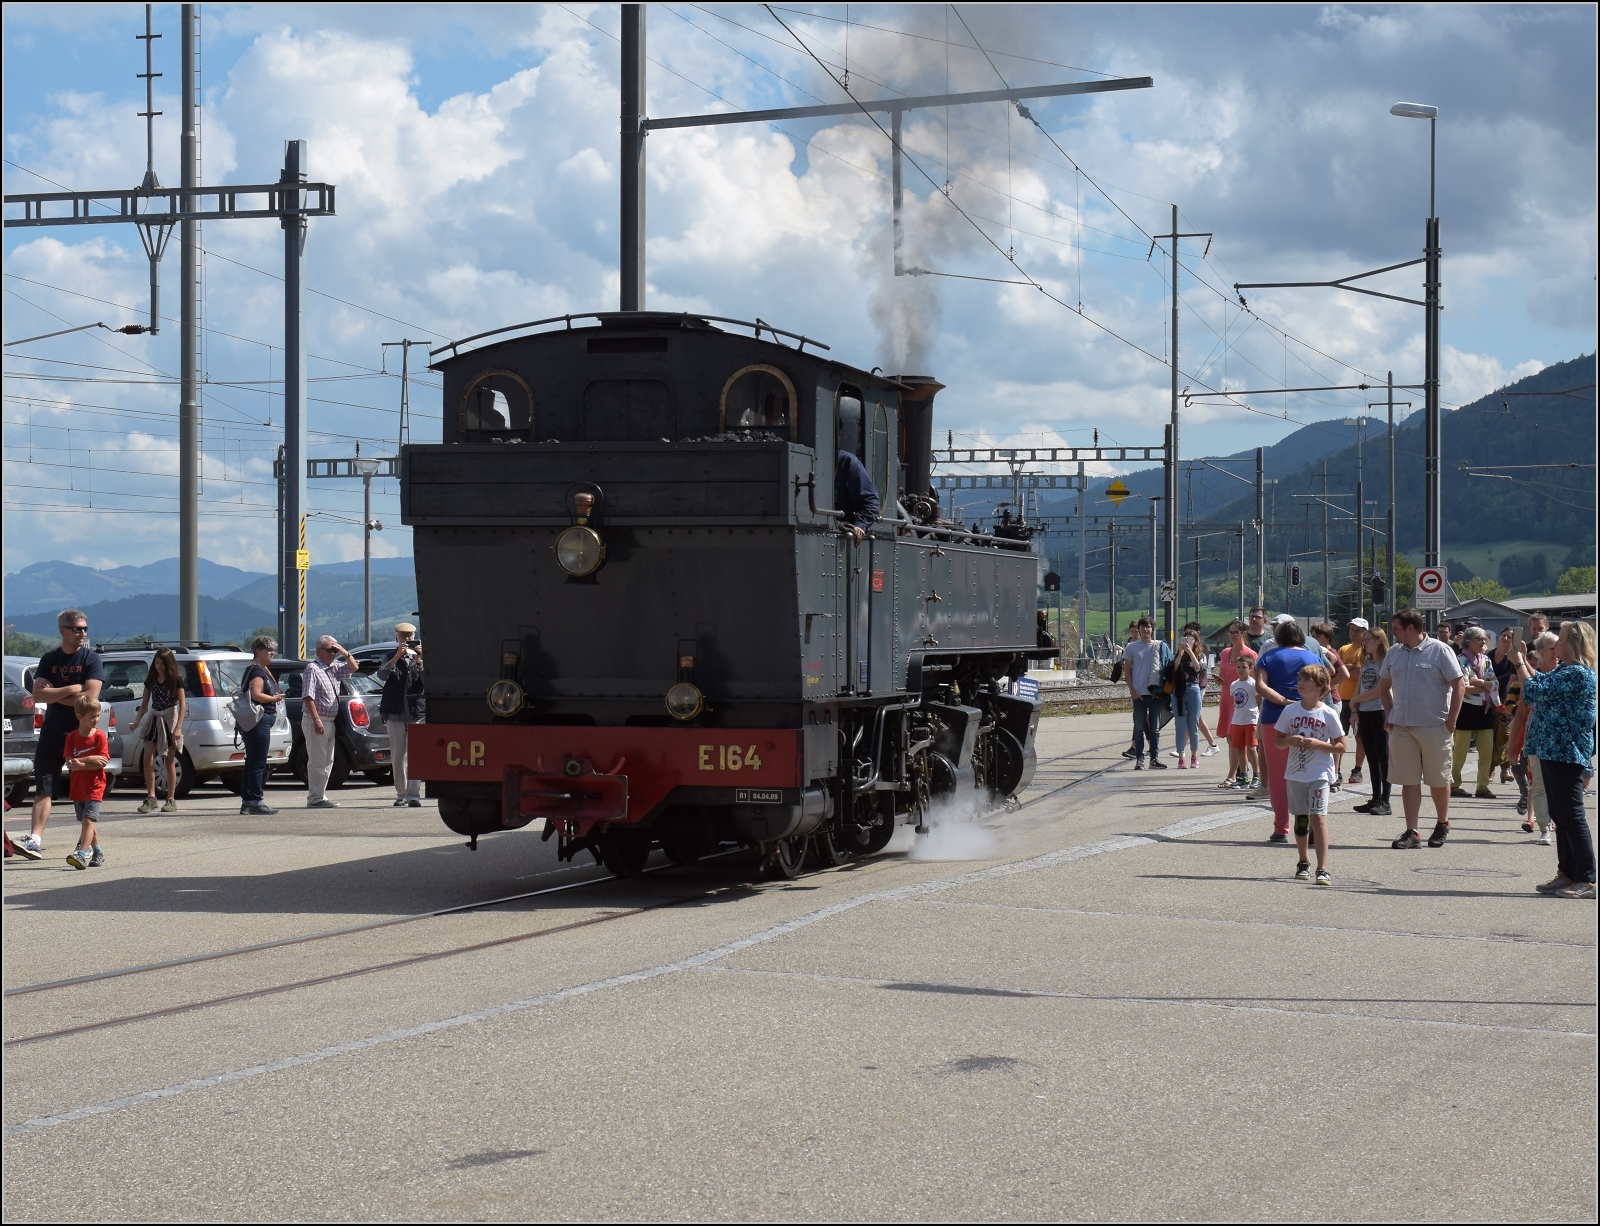 Train a vapeur de Franches-Montagnes von La Traction.

Als das Wasserfassen von CP E164 fertig ist, macht die Fotowolke auch Platz, die vielen schaulustigen Dampfzugpassagiere auch. Glovelier, September 2022.